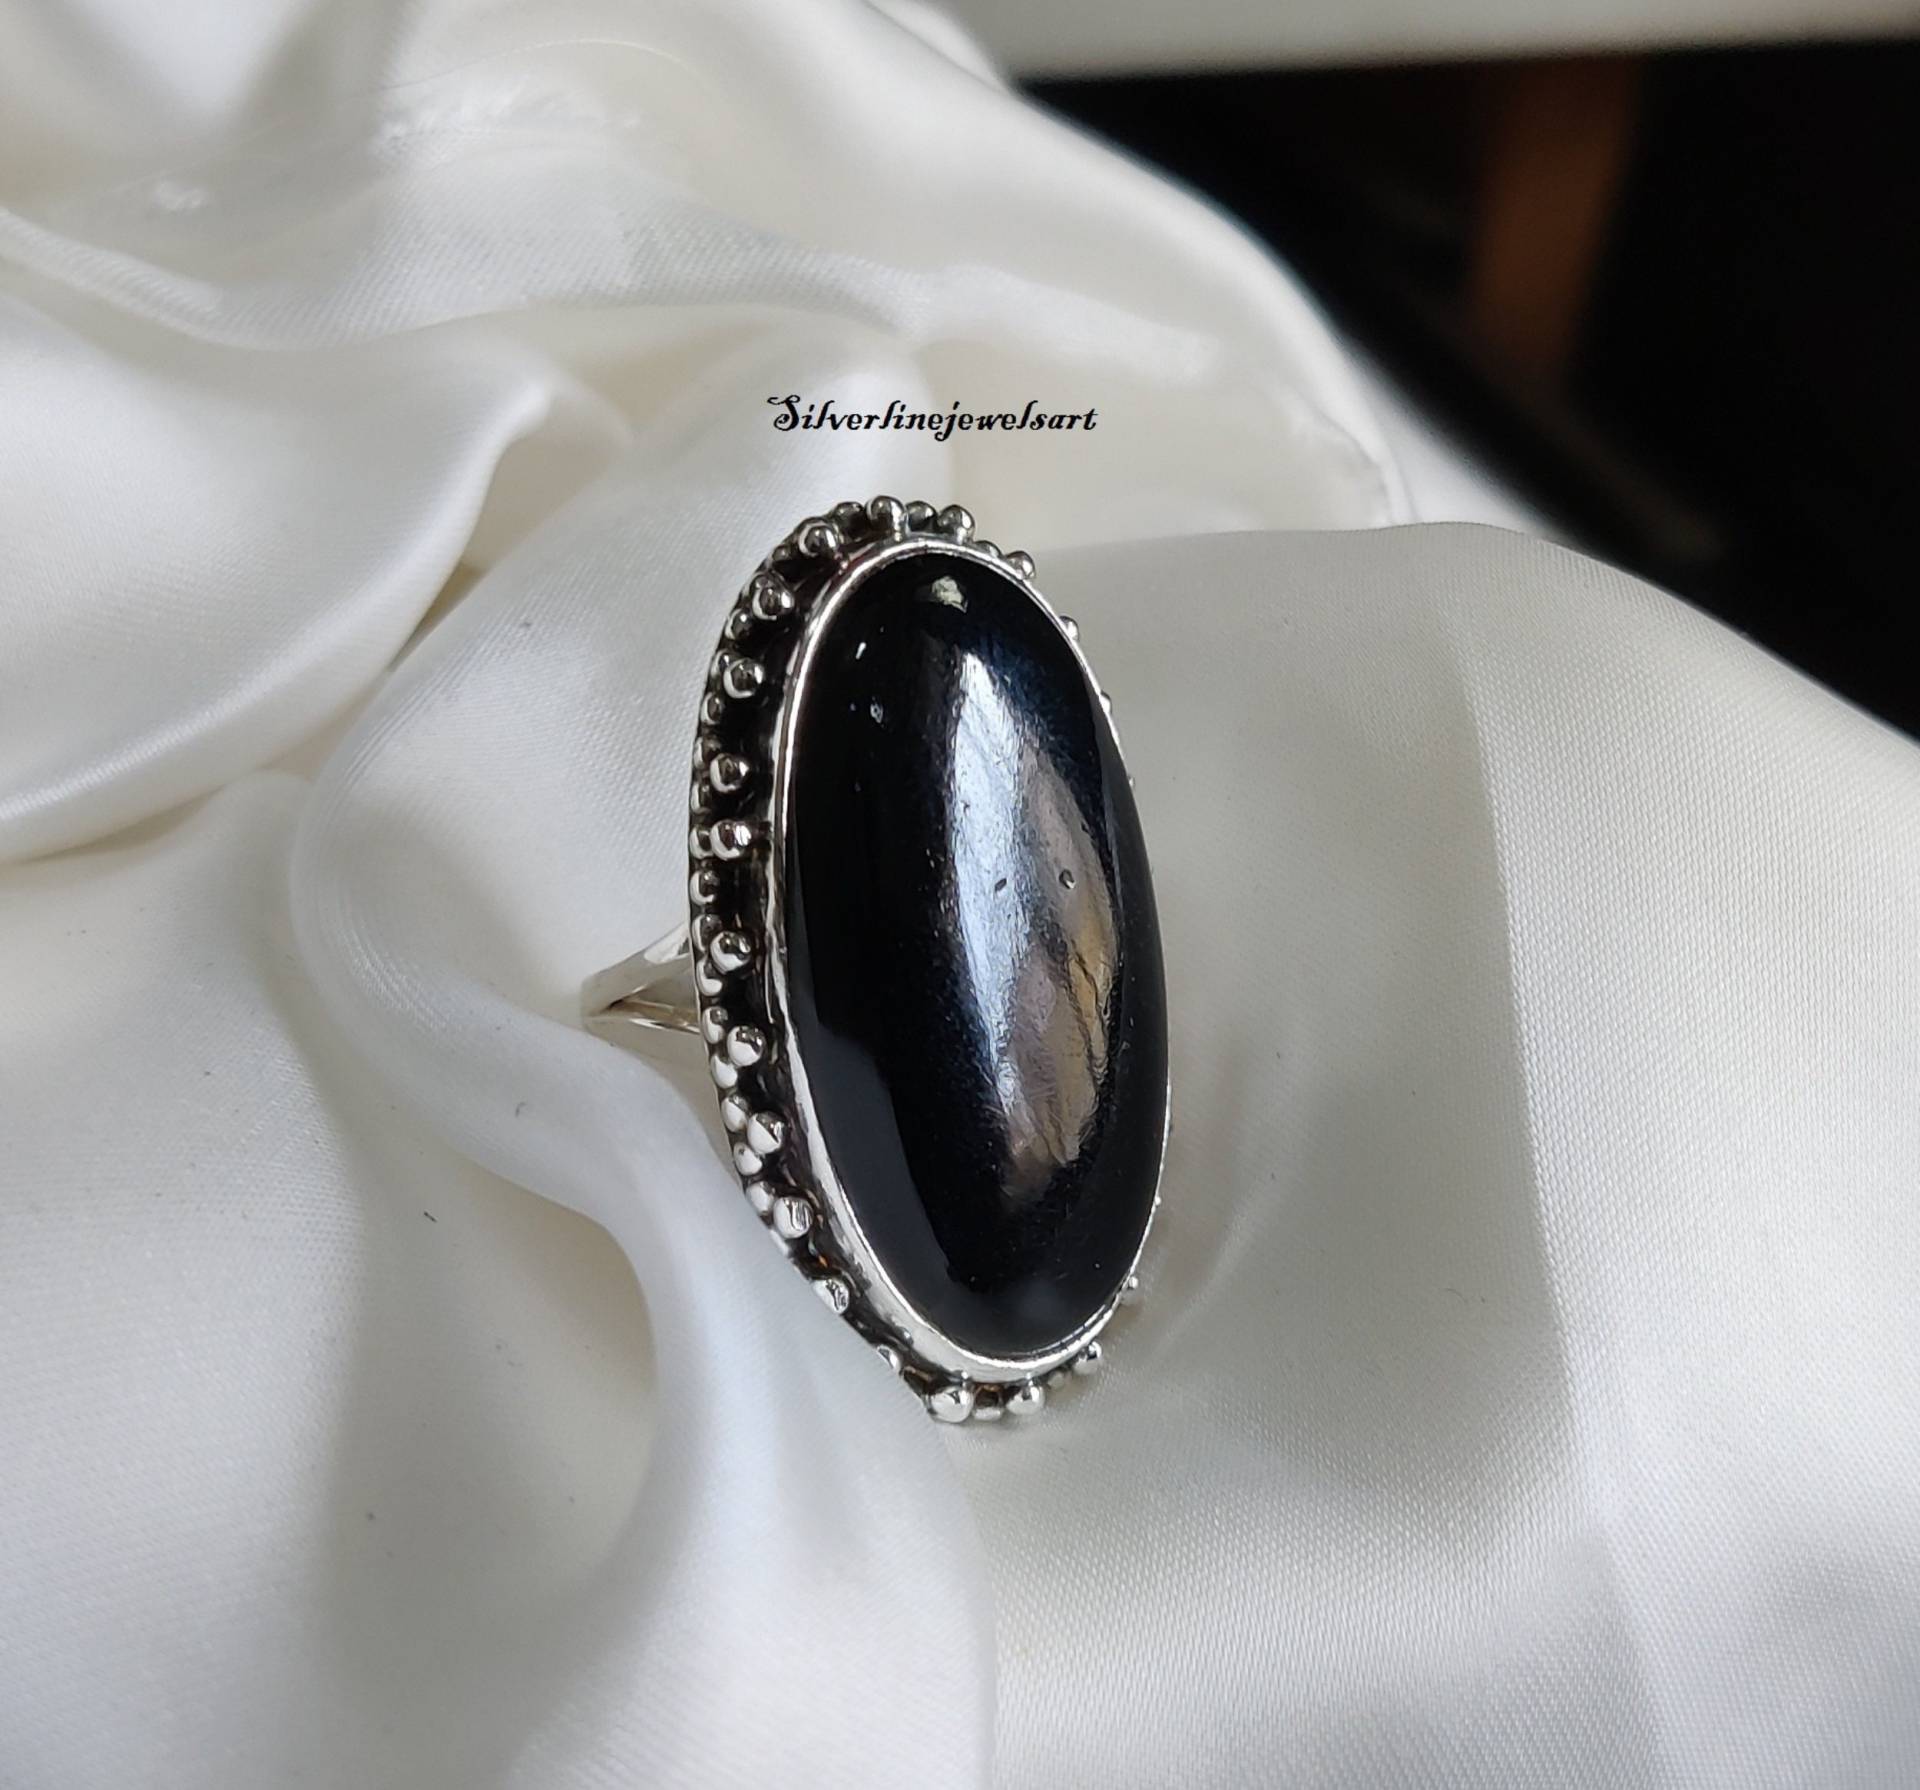 Designer Groß Oval Ring, Schwarz Onyx Handgemachter 925 Silber Edelstein Antiker Stein, Geschenk Für Sie, Frauen Ring von SilverlinejewelsArt